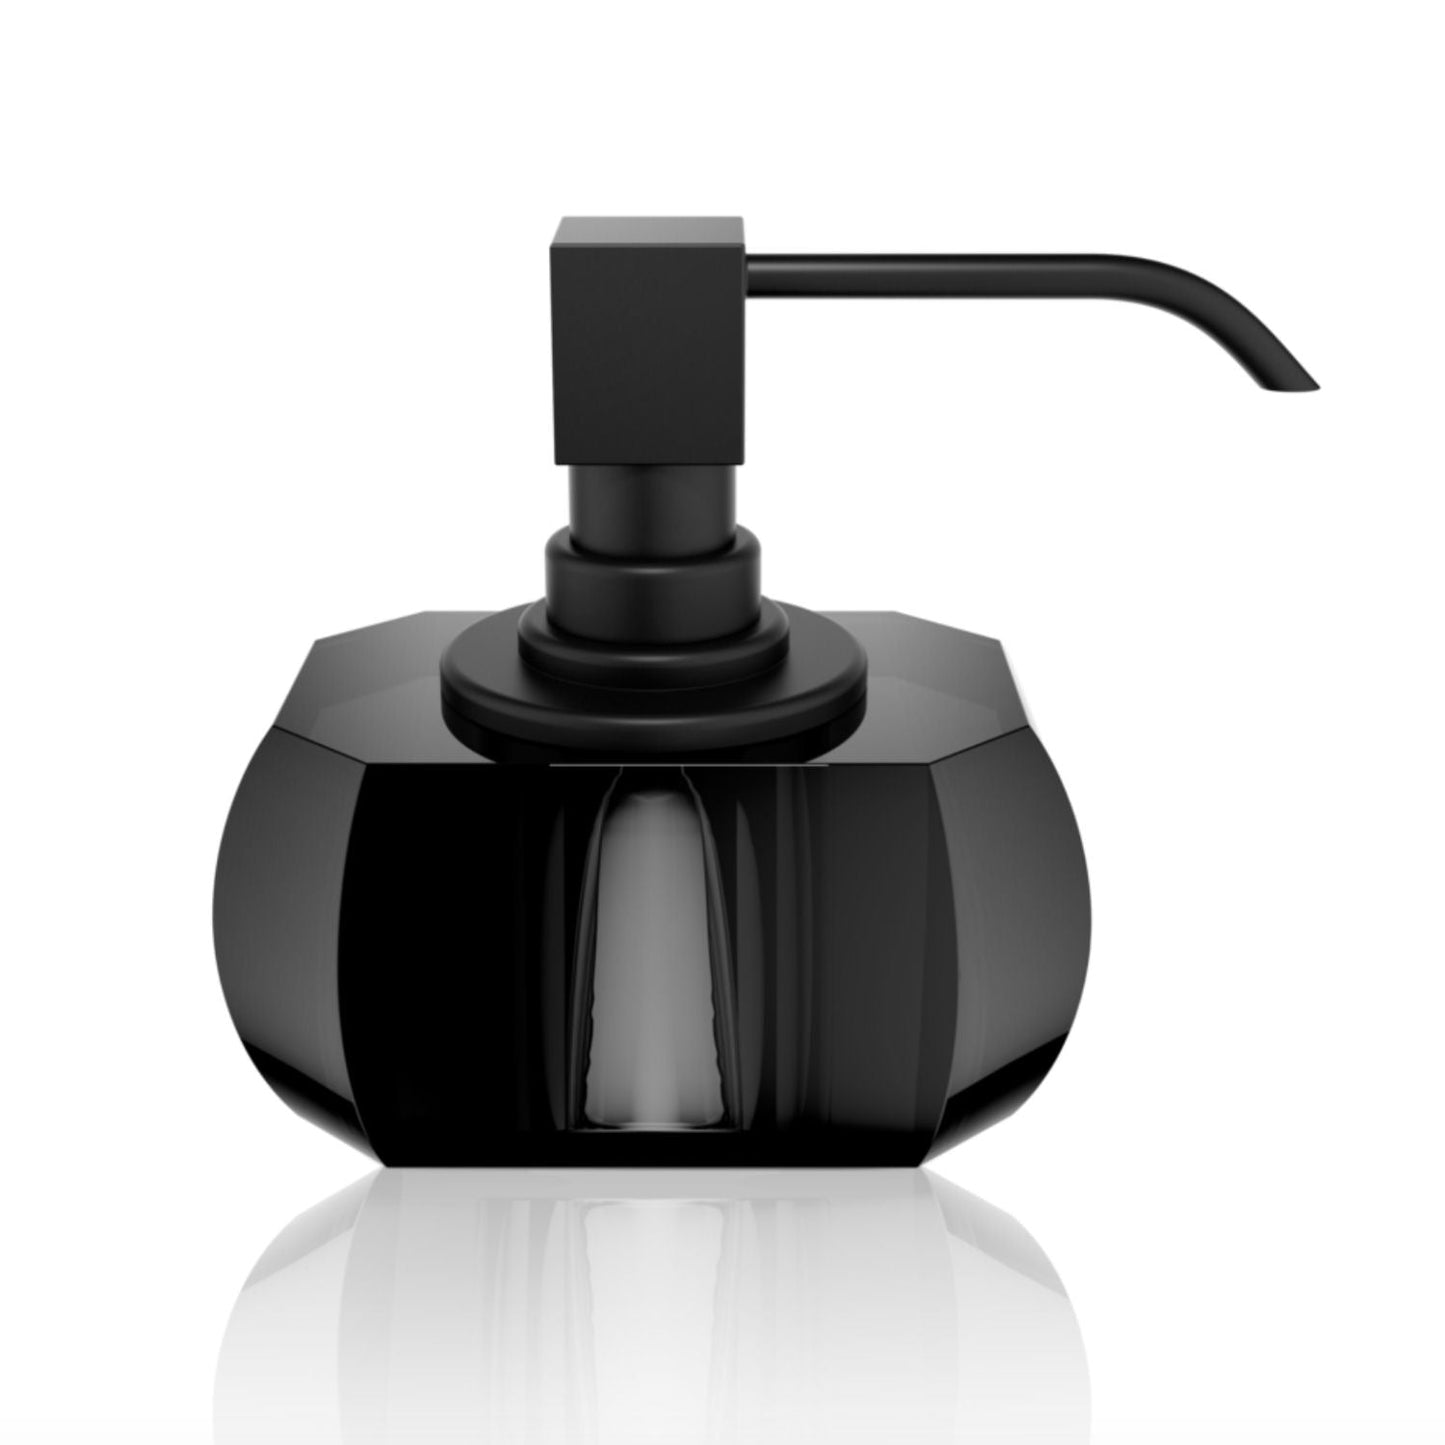 Luxury Black Matt Crystal Glass Liquid Soap Dispenser | Anthracite - |VESIMI Design| Luxury and Rustic bathrooms online